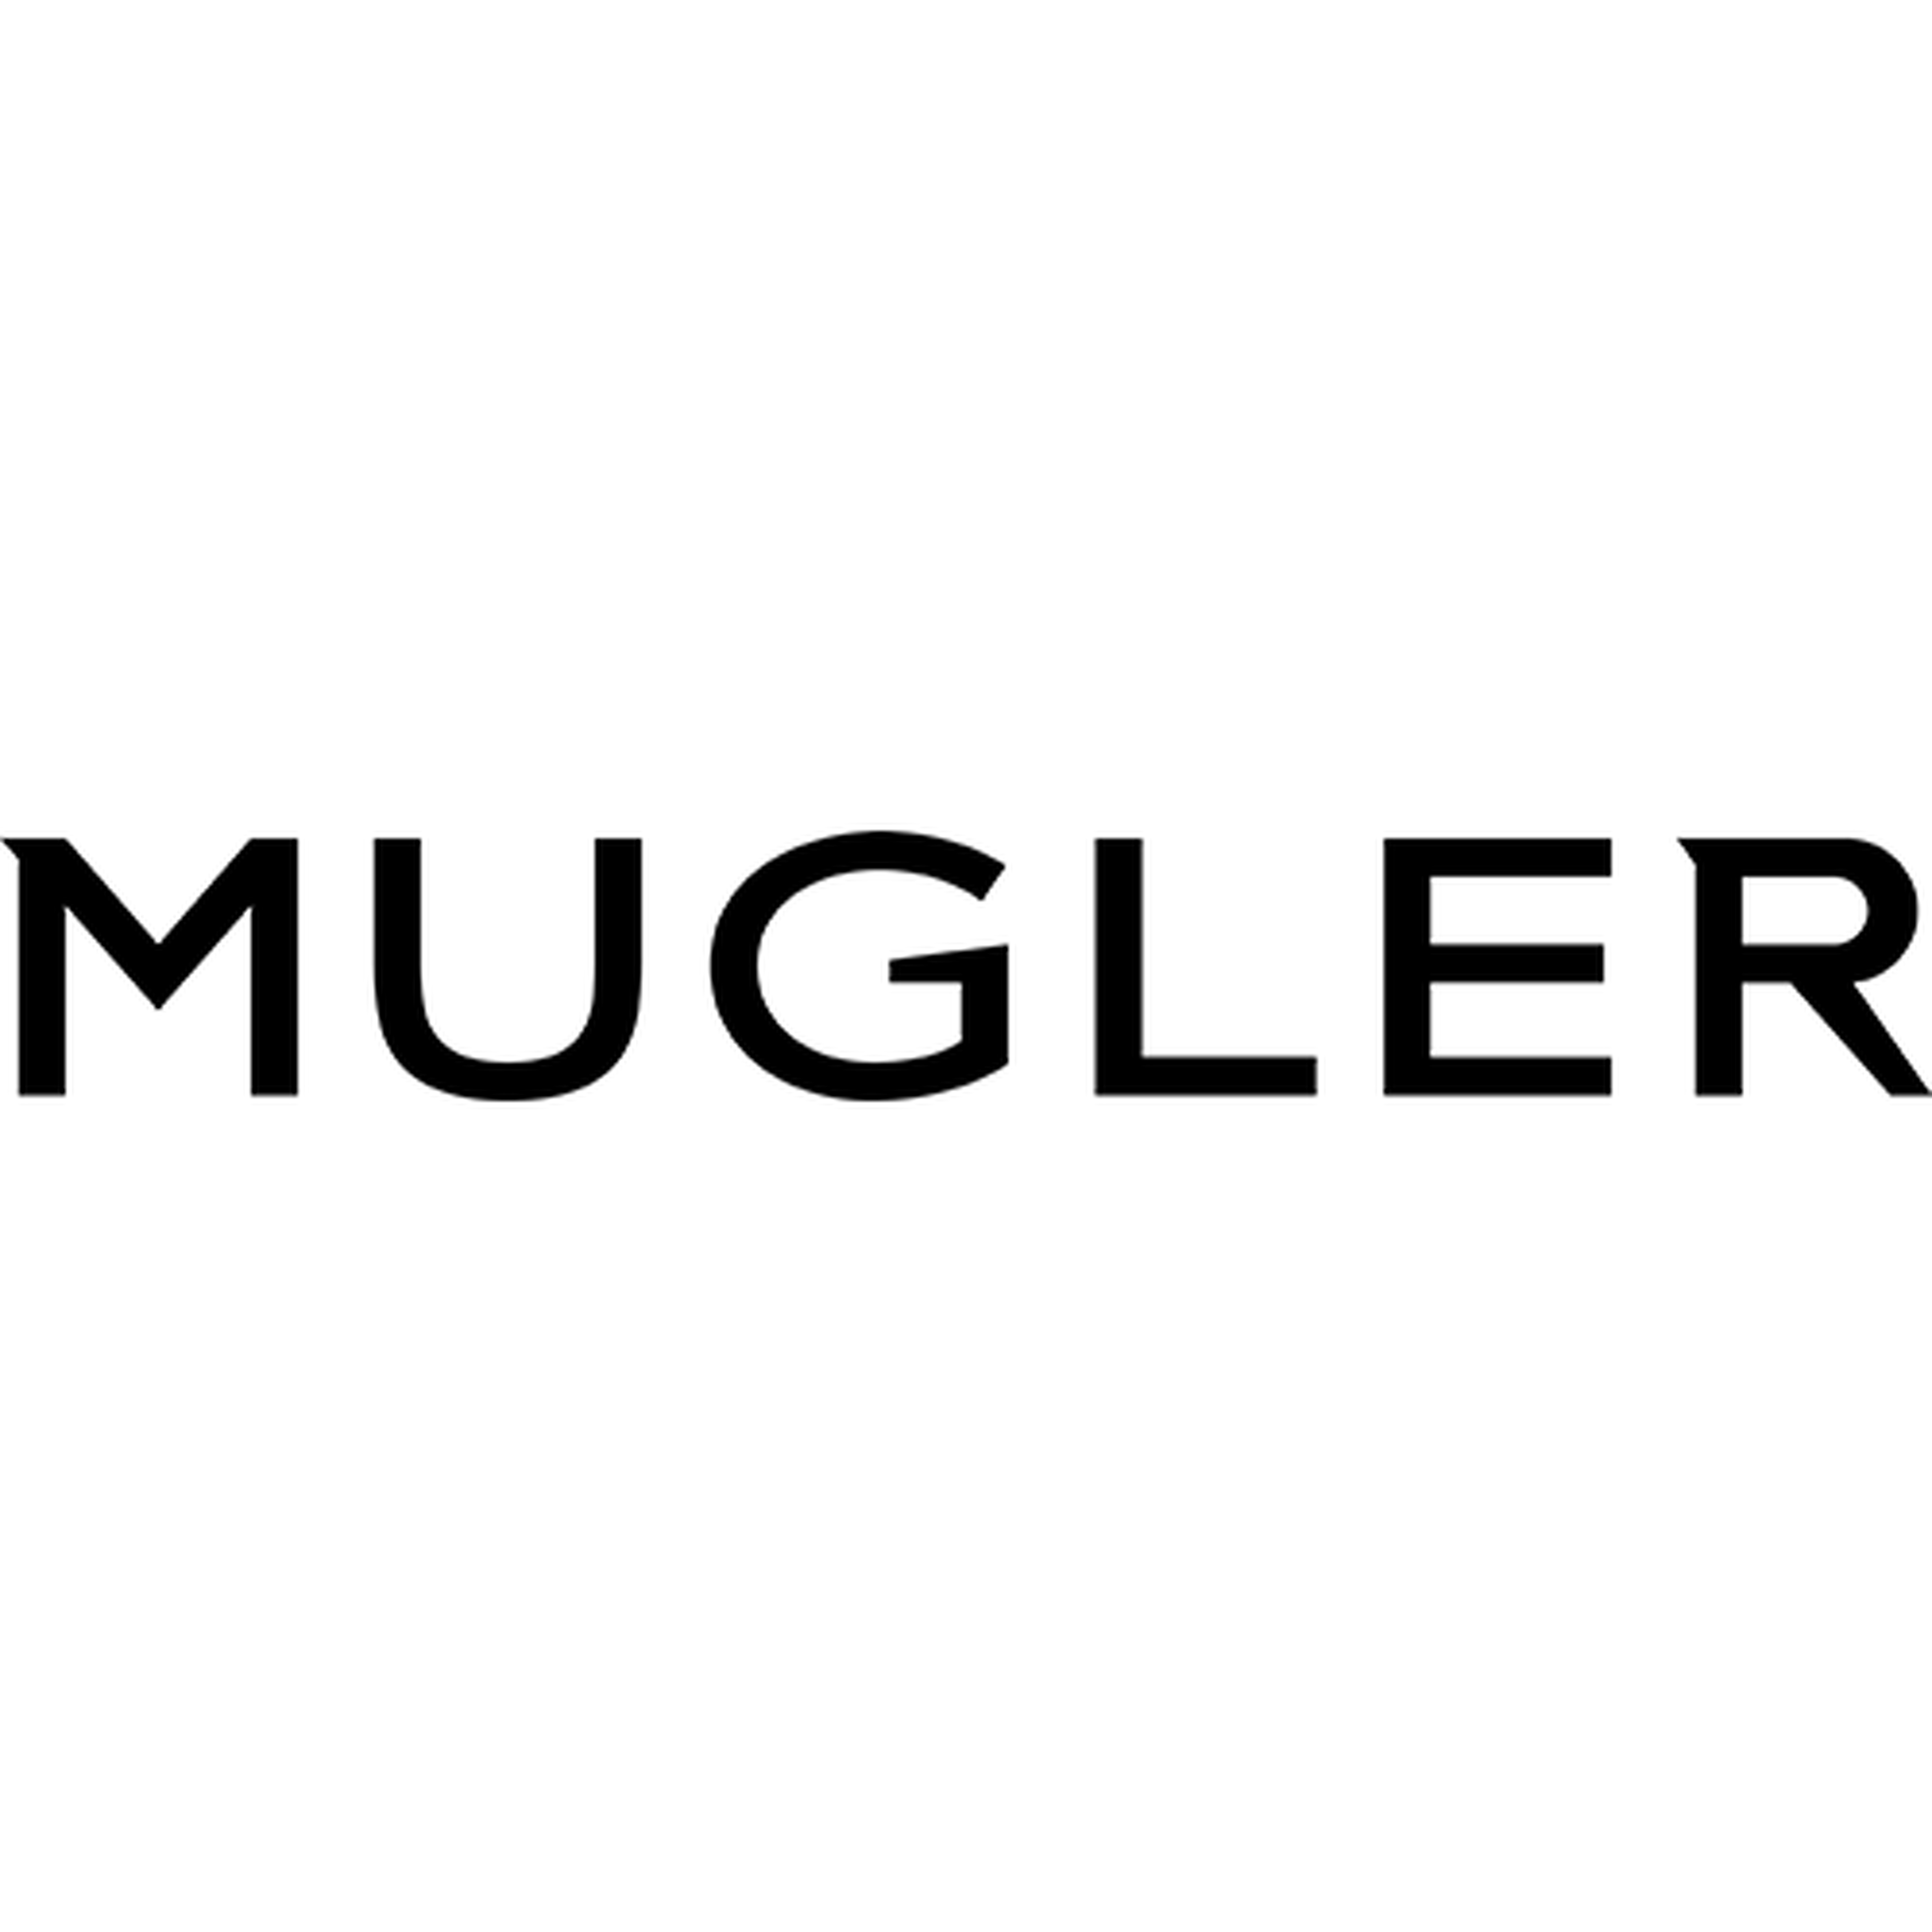 Mugler logotype